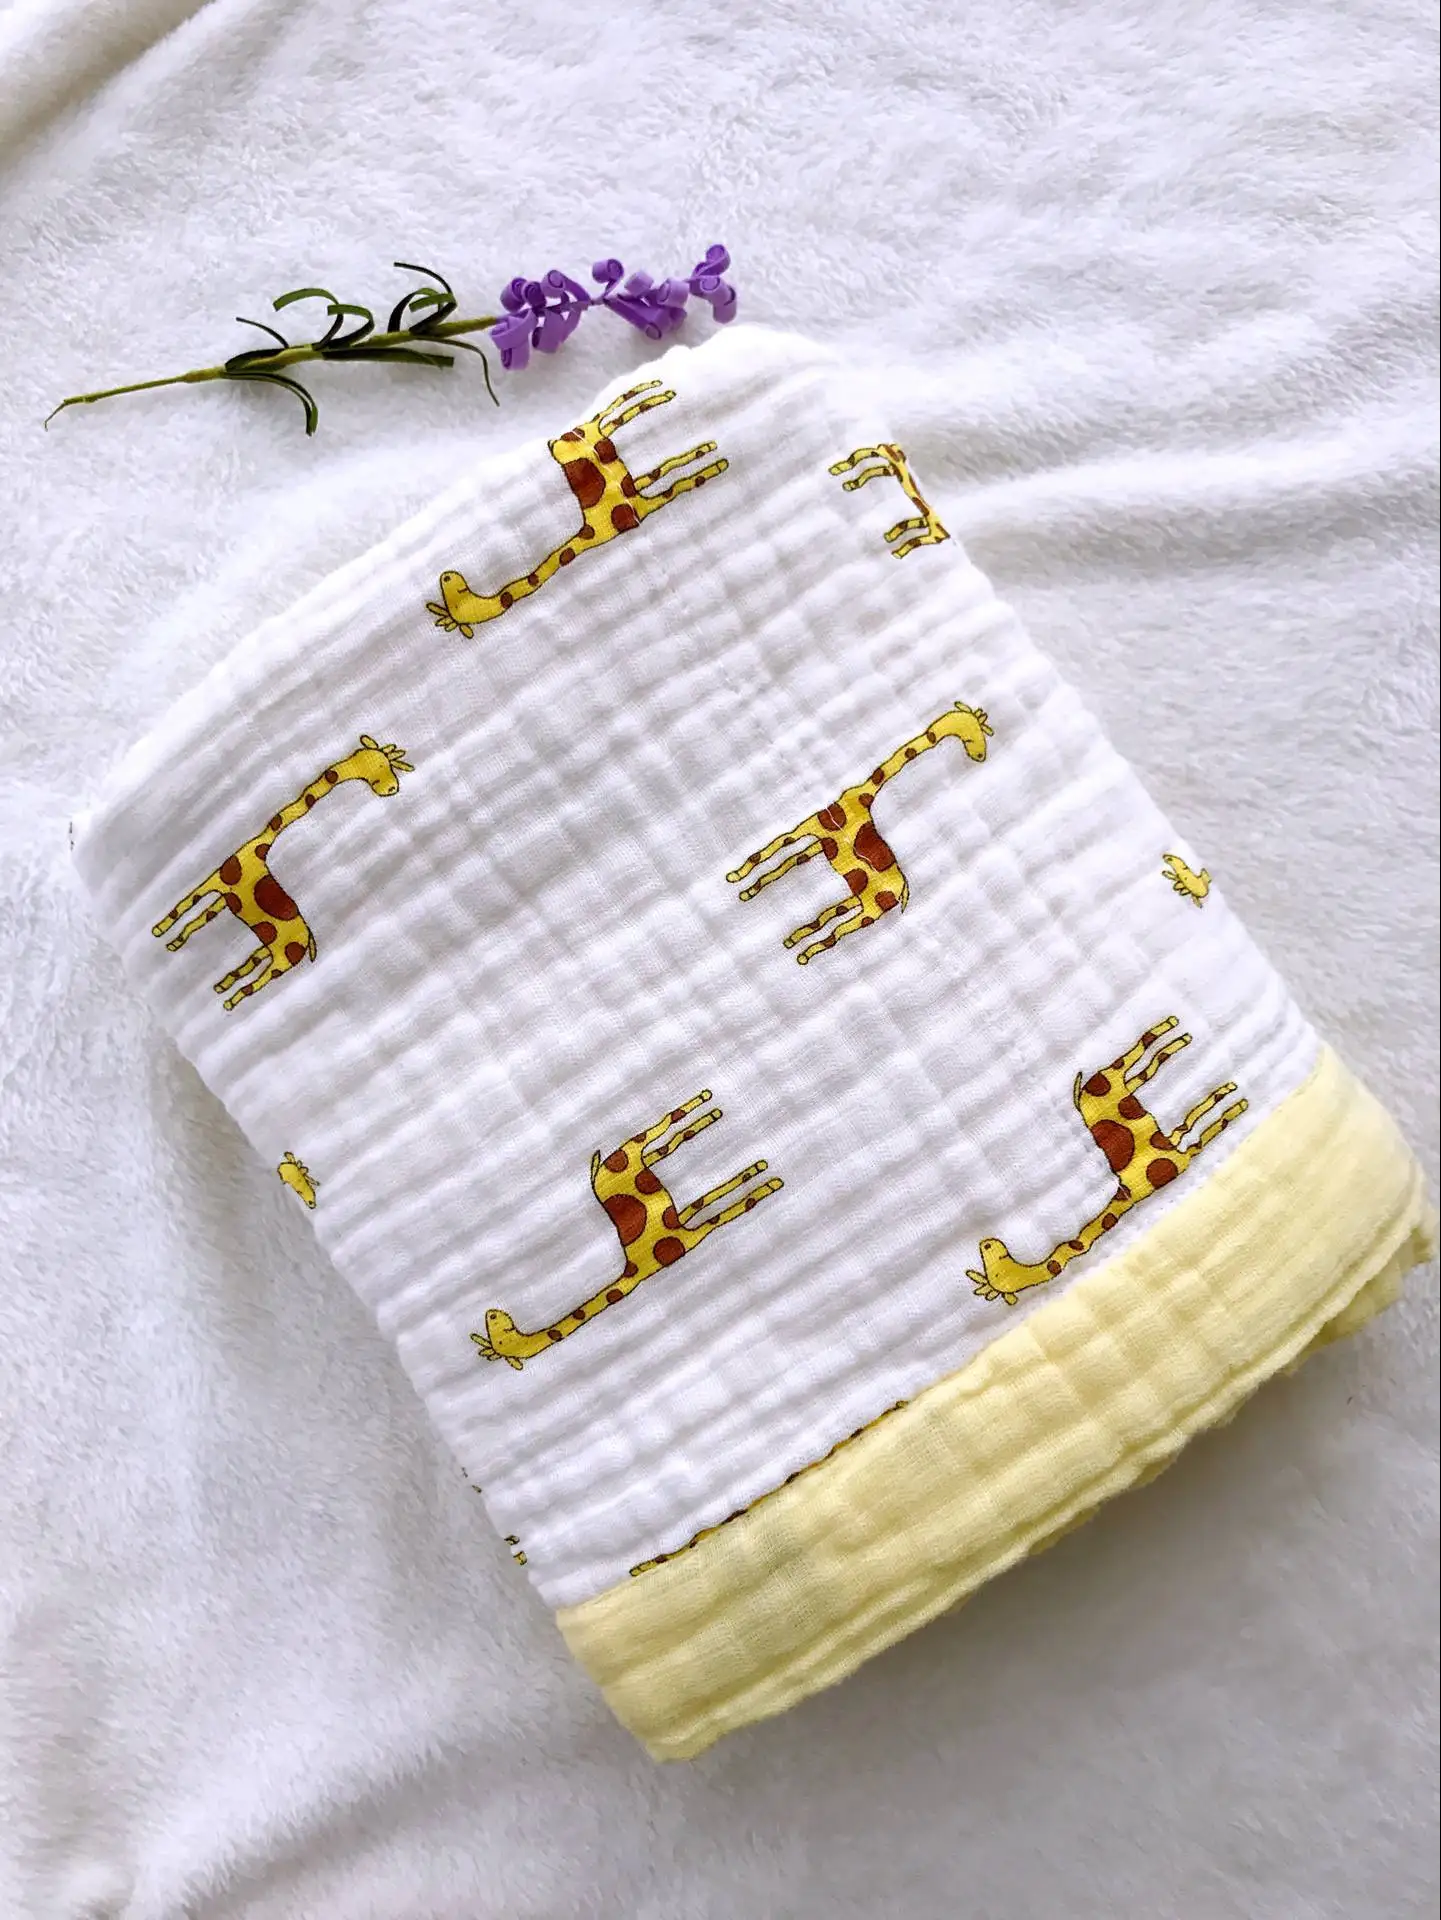 6 слоев детское одеяло для новорожденных из бамбукового волокна хлопковая муслиновая пеленка для младенцев детского постельного белья, игровой коврик для детей Ванна Полотенца - Цвет: Style 2